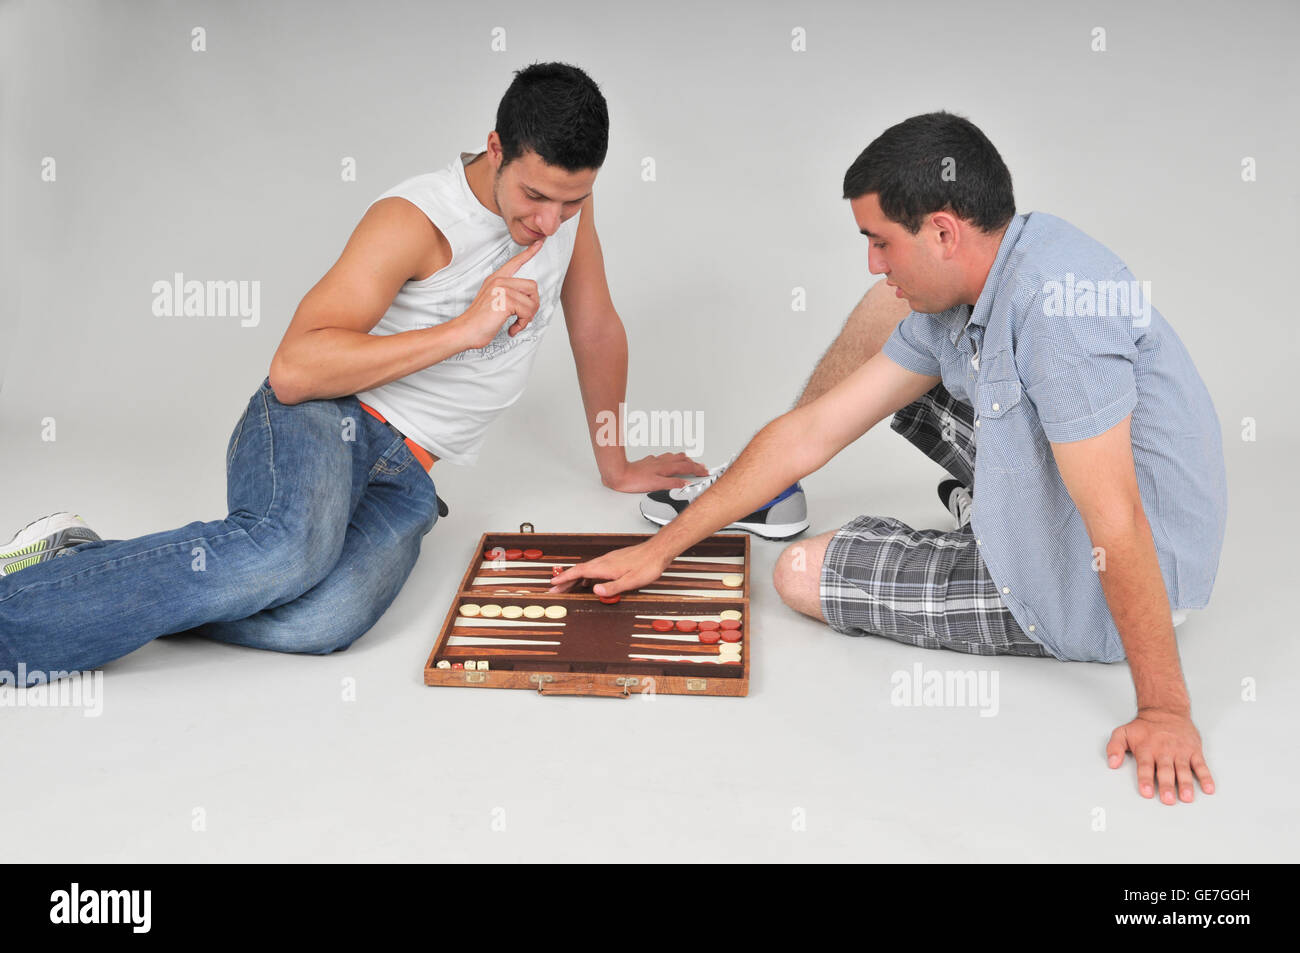 Армяне нарды анекдот. Армяне играющие в нарды. Люди за игрой в нарды. Парни играют в нарды. Люди играют в карты на полу.